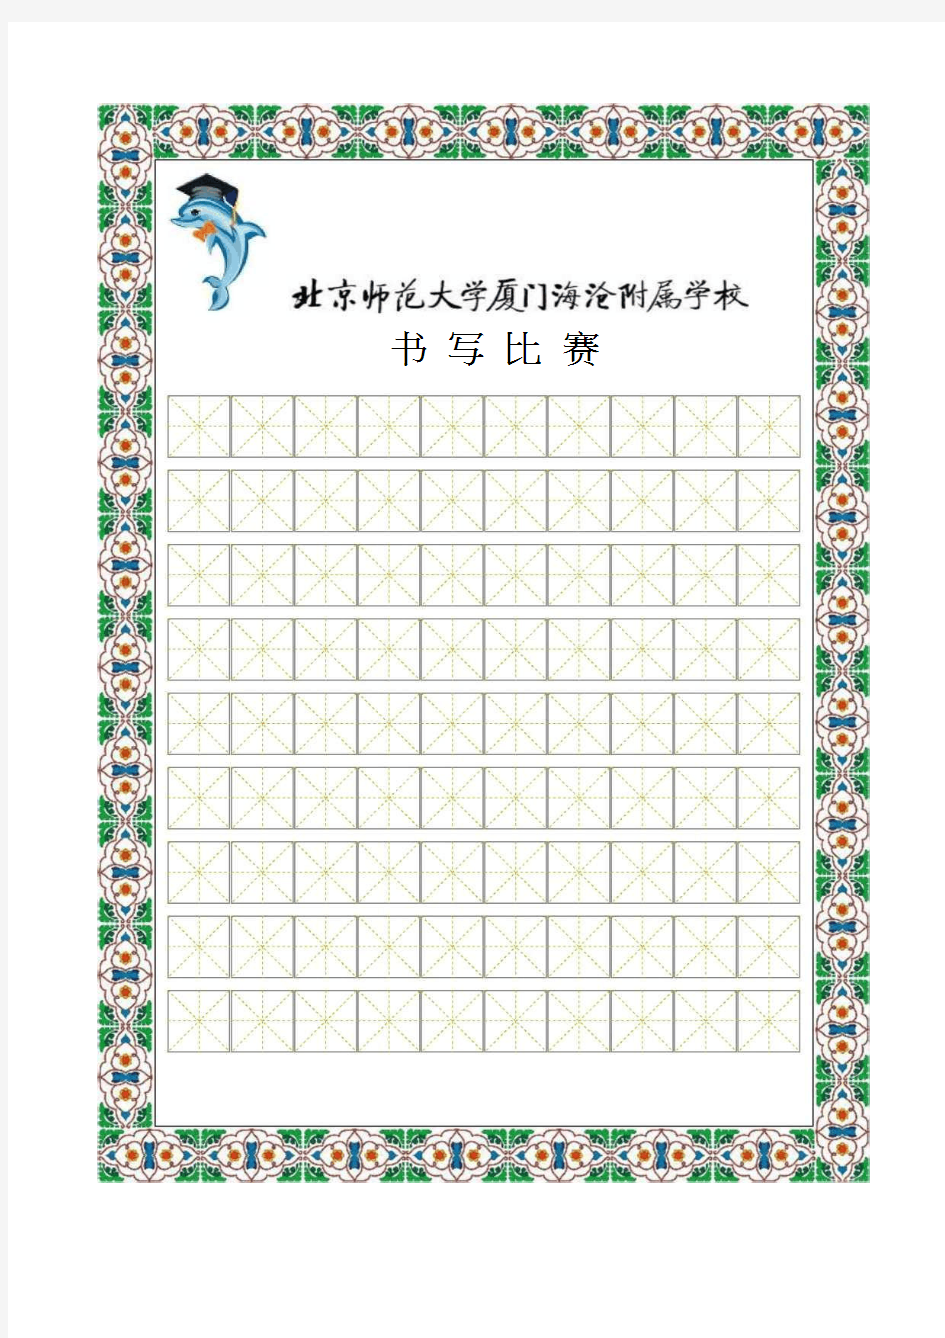 书法比赛专用纸(精美田字格)19115